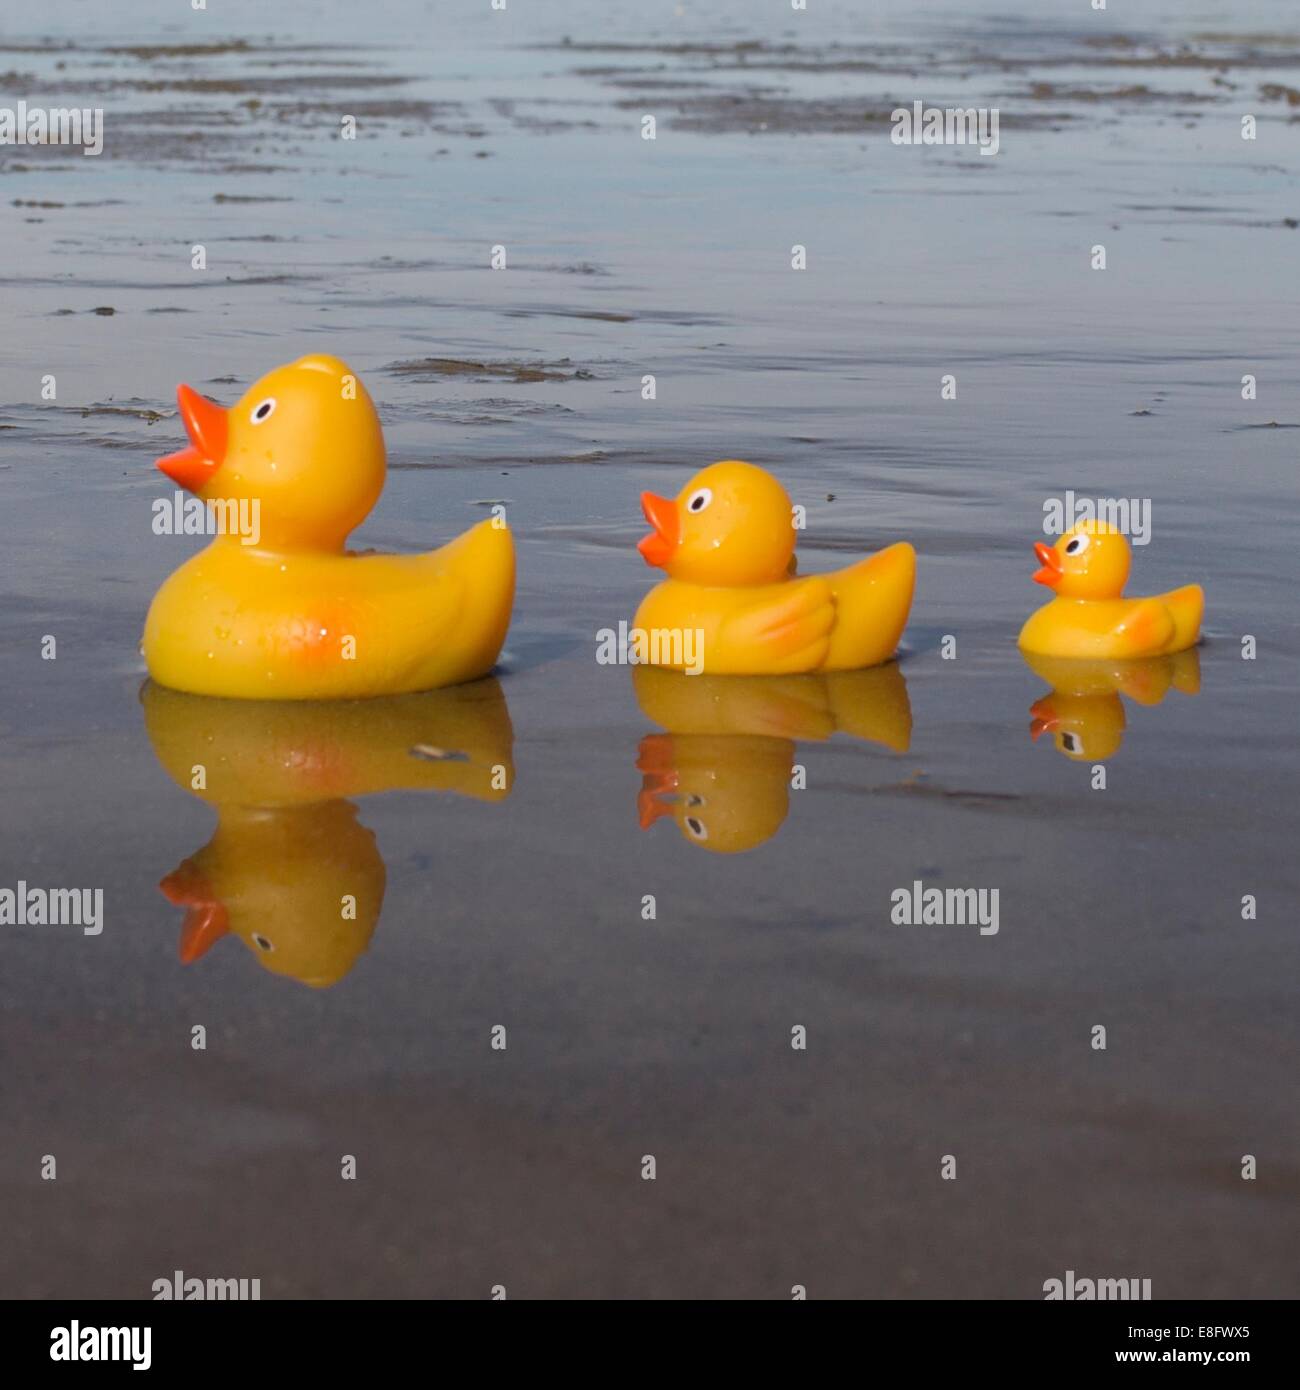 Three rubber ducks on beach Stock Photo